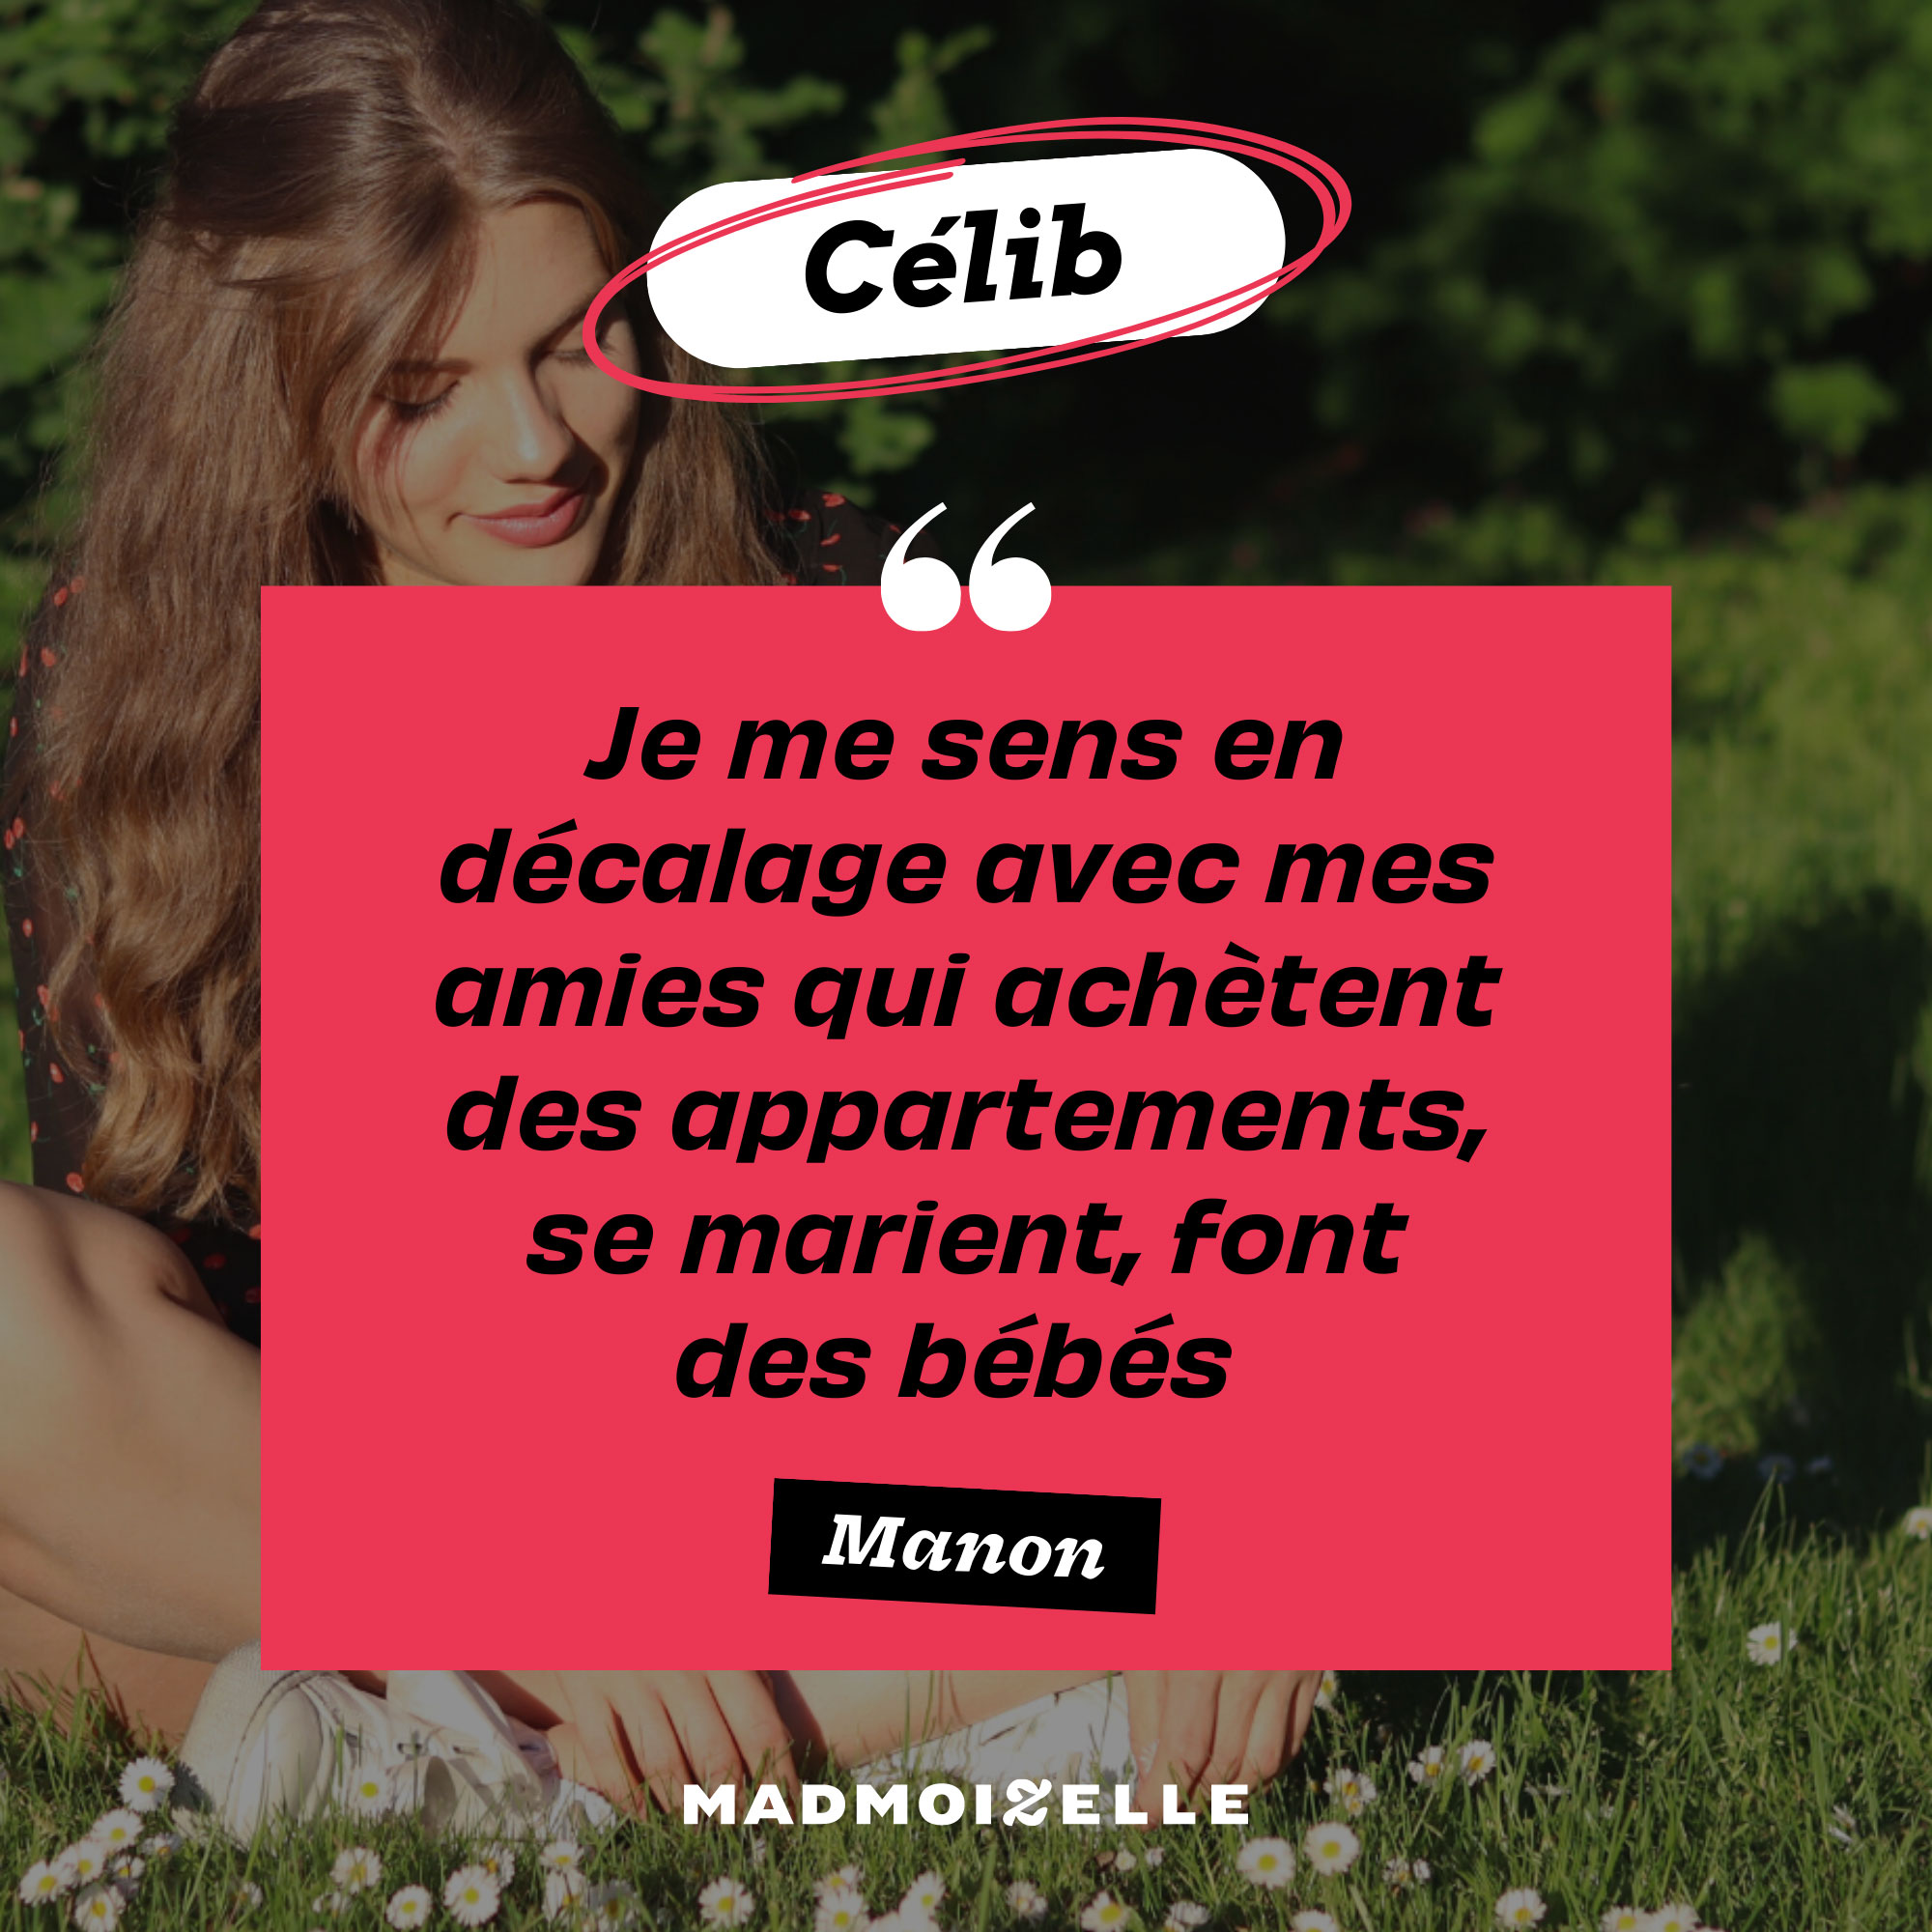 celib_Manon_citation